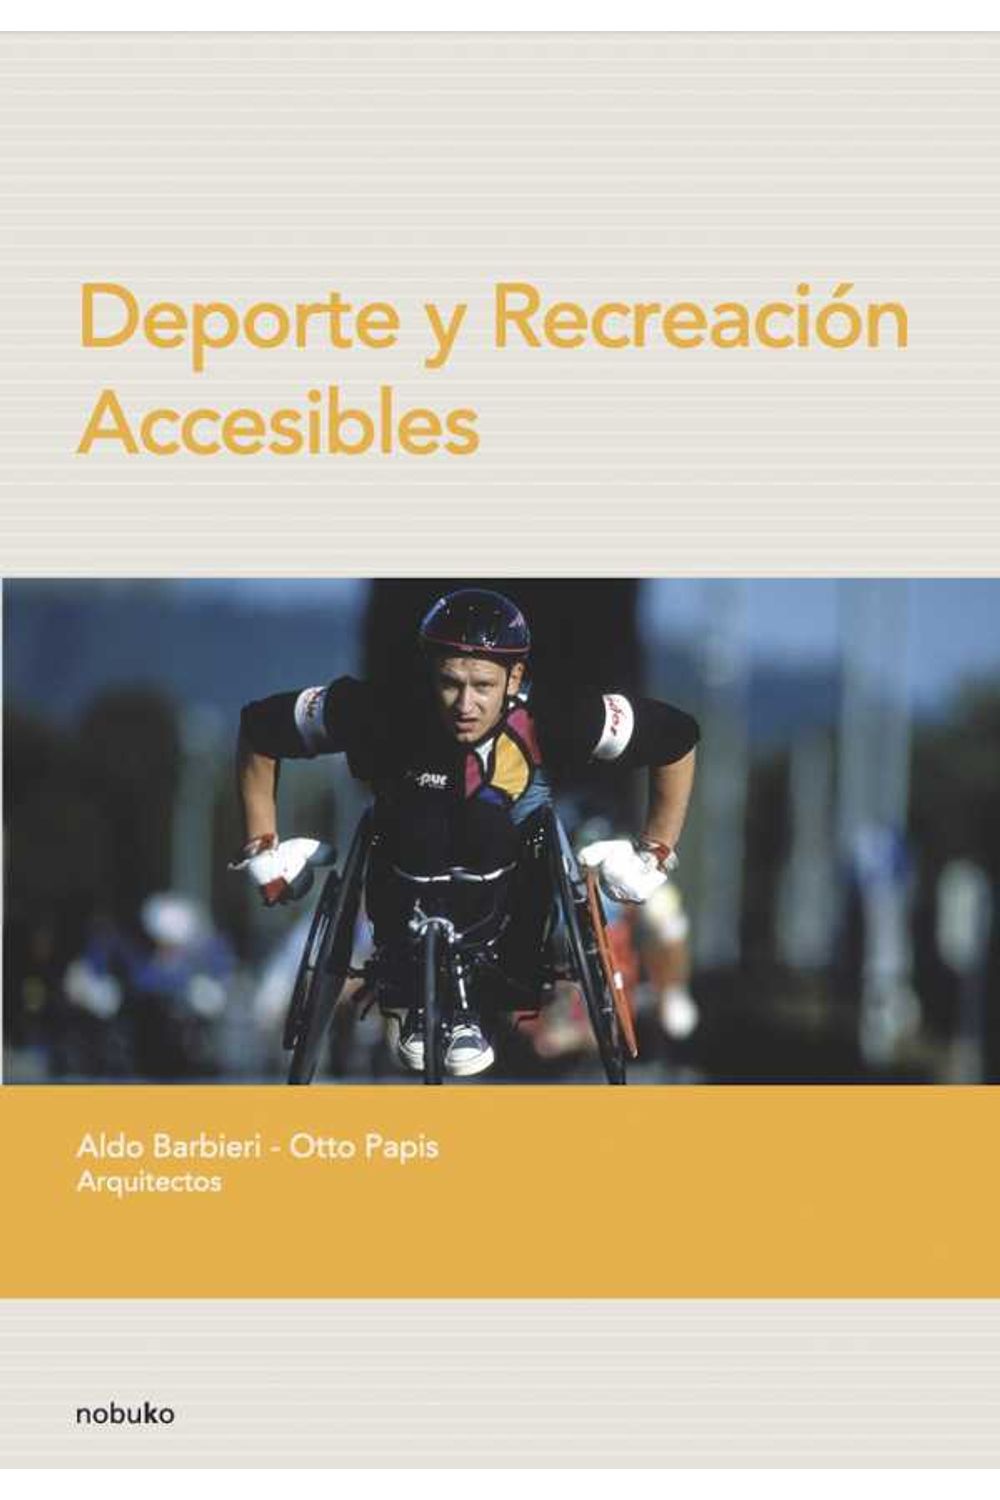 bw-deporte-y-recreacioacuten-accesibles-nobuko-9789873409479